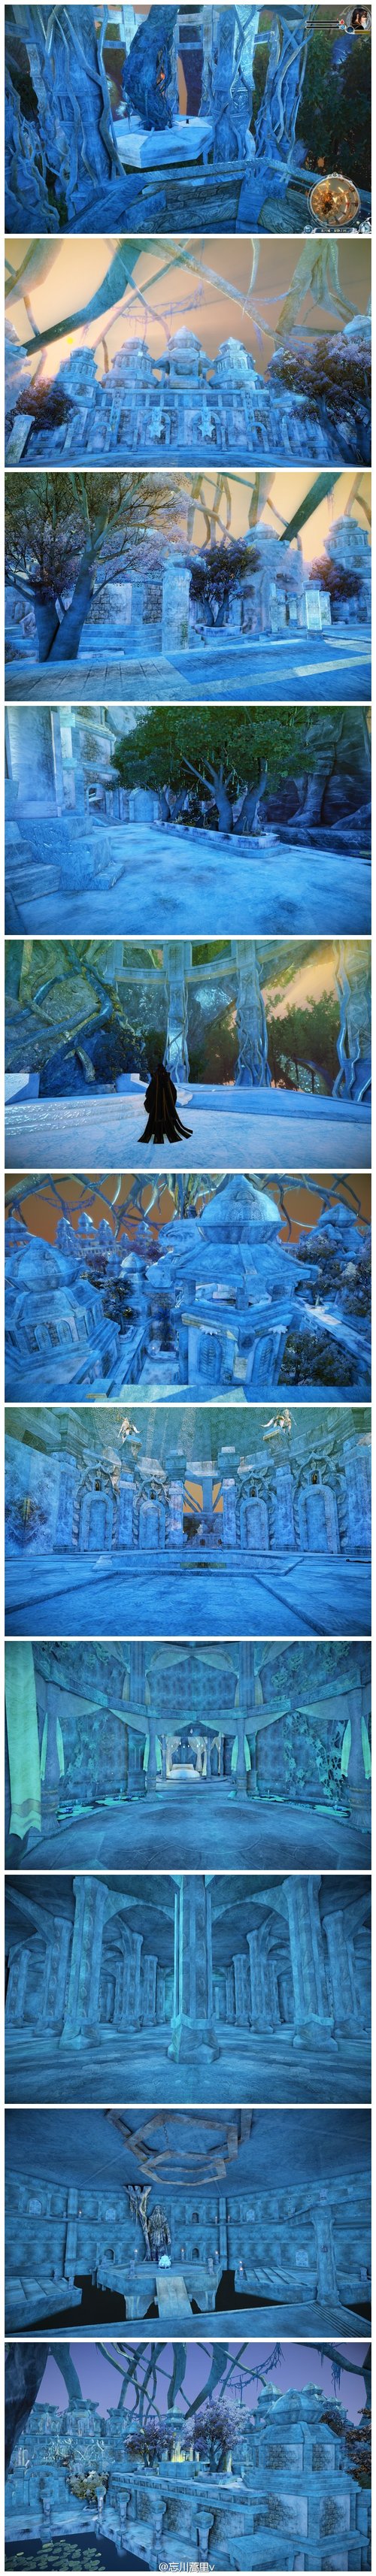 《古剑奇谭2》场景MOD 冰封流月城